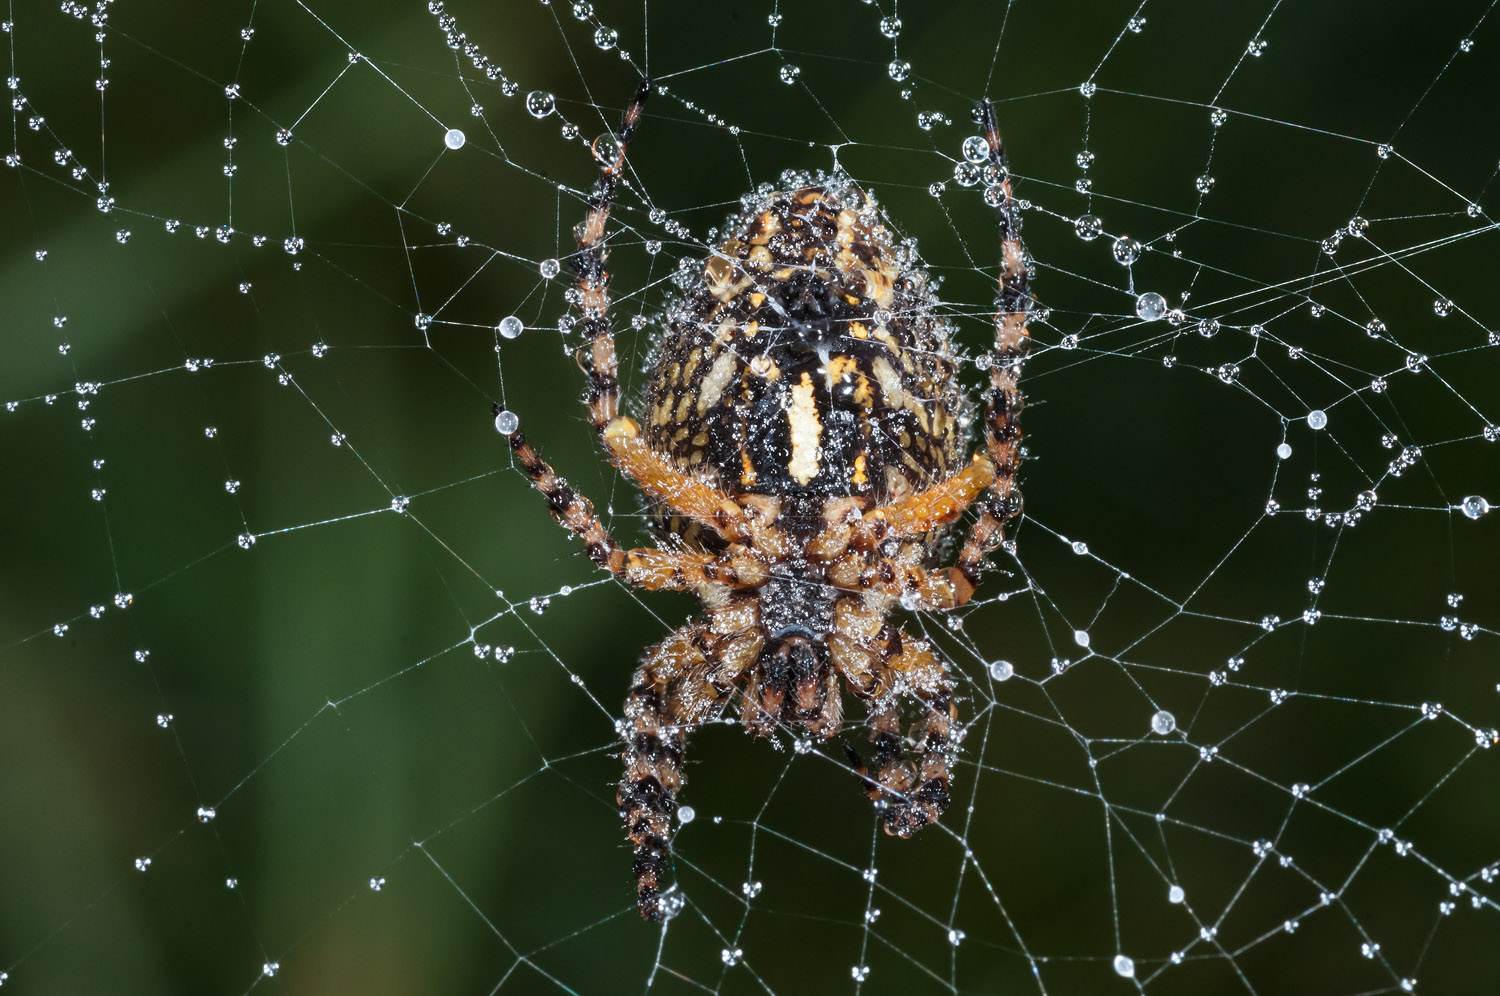 European garden spider or Diadem spider or Cross spider